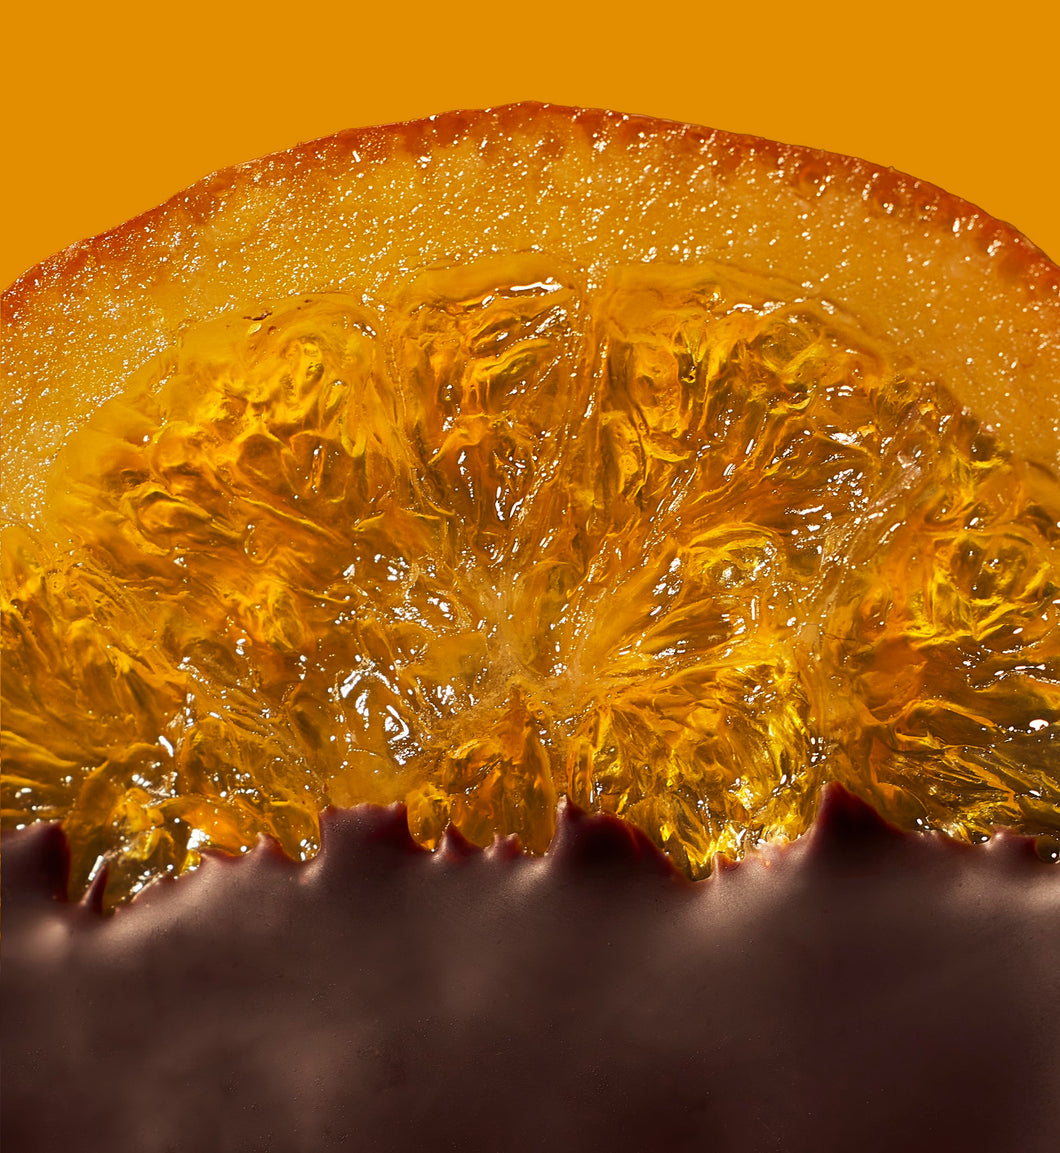 Candied Orange